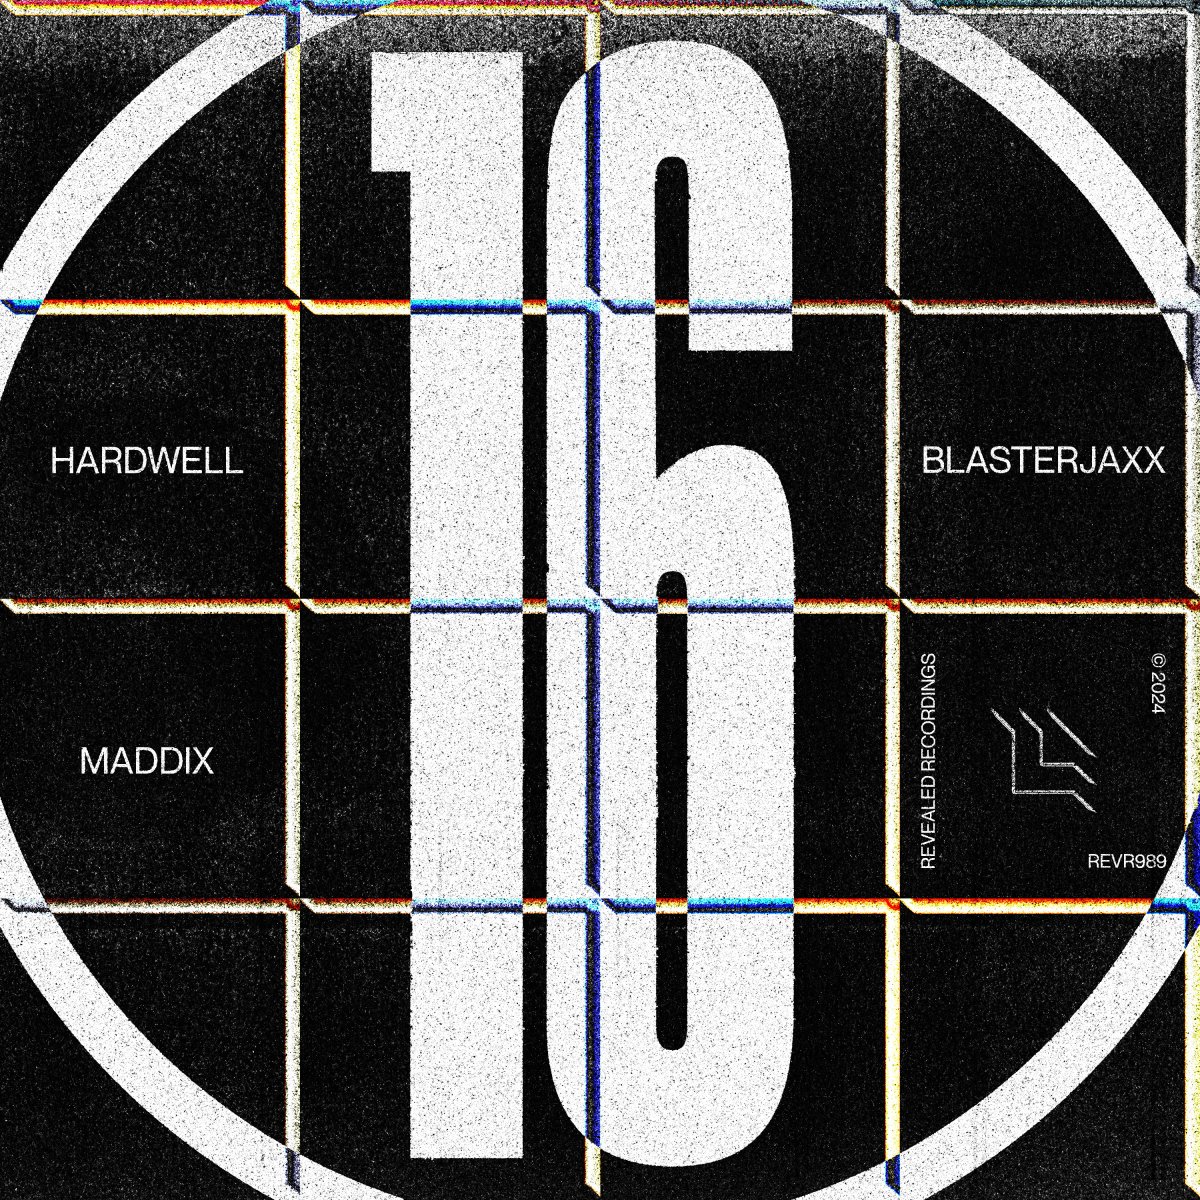 16 – Hardwell & Blasterjaxx & Maddix